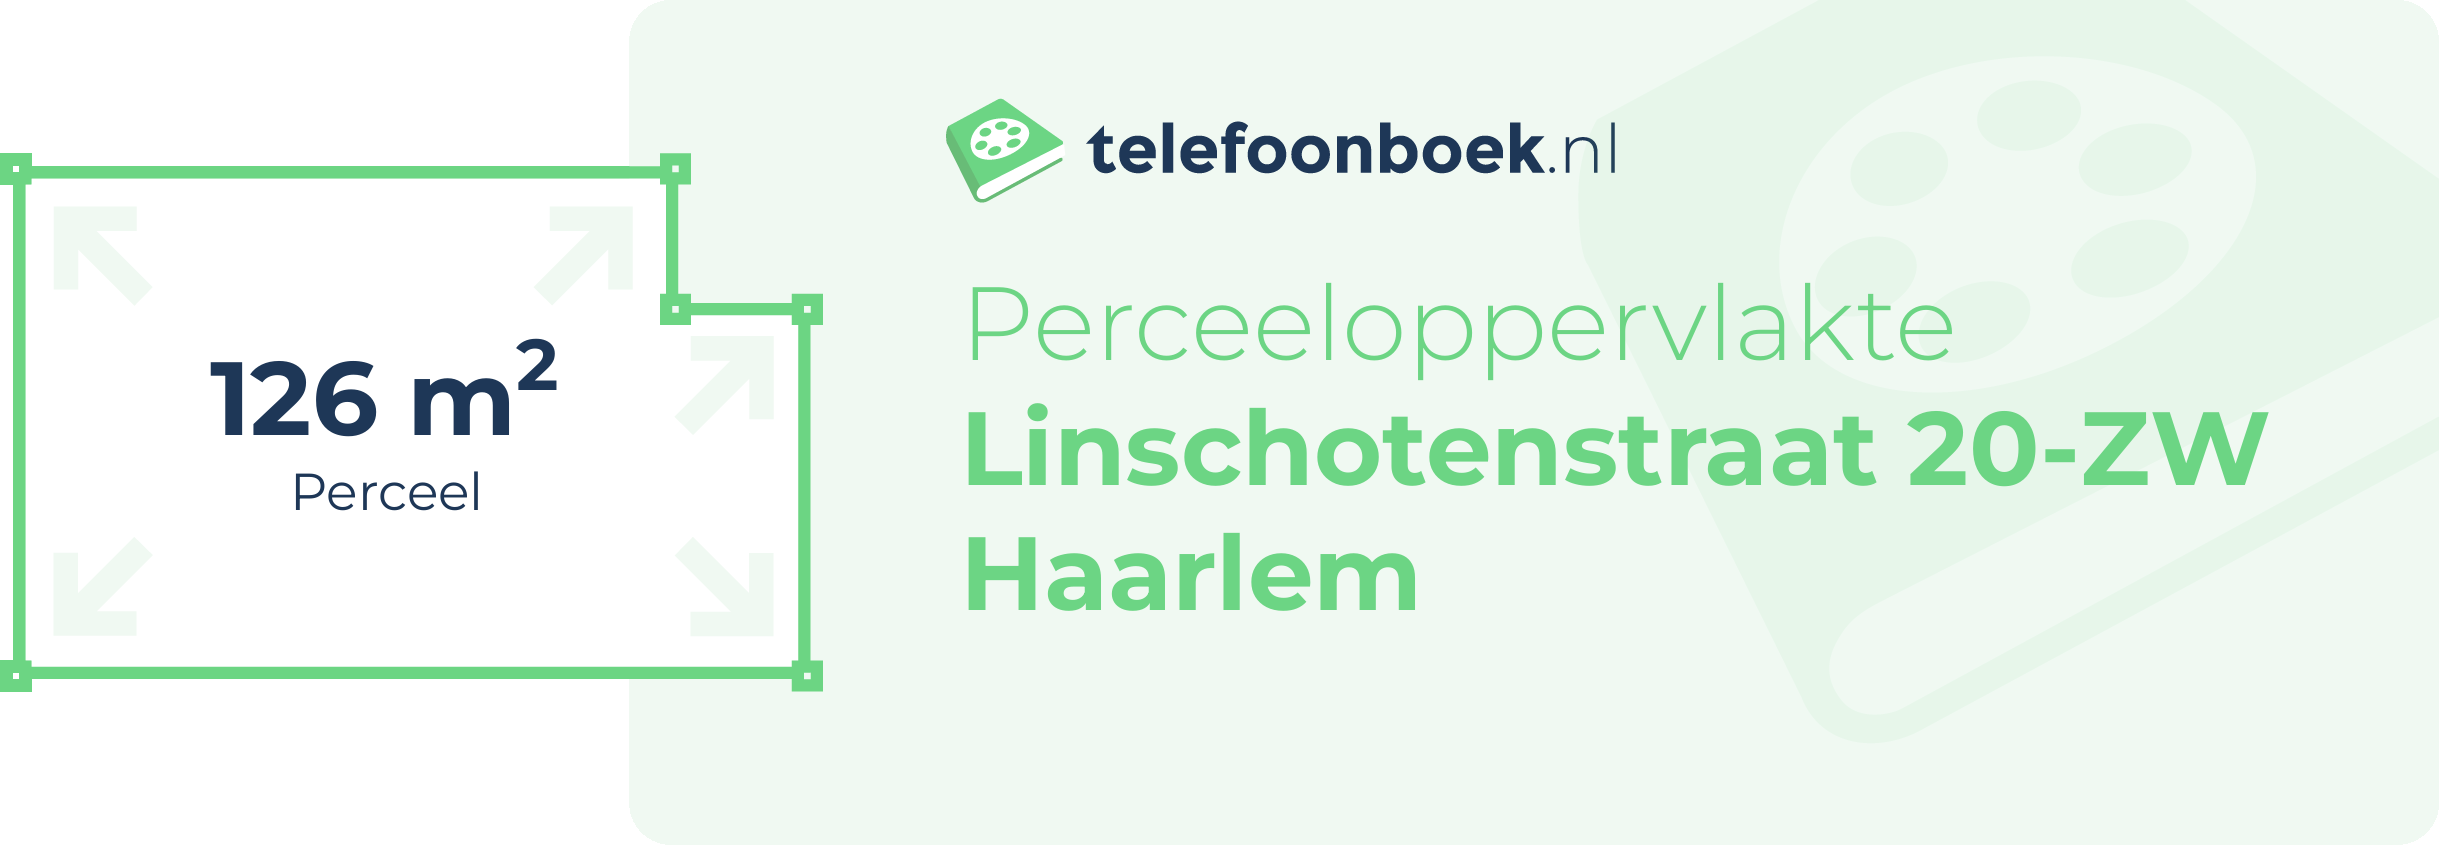 Perceeloppervlakte Linschotenstraat 20-ZW Haarlem